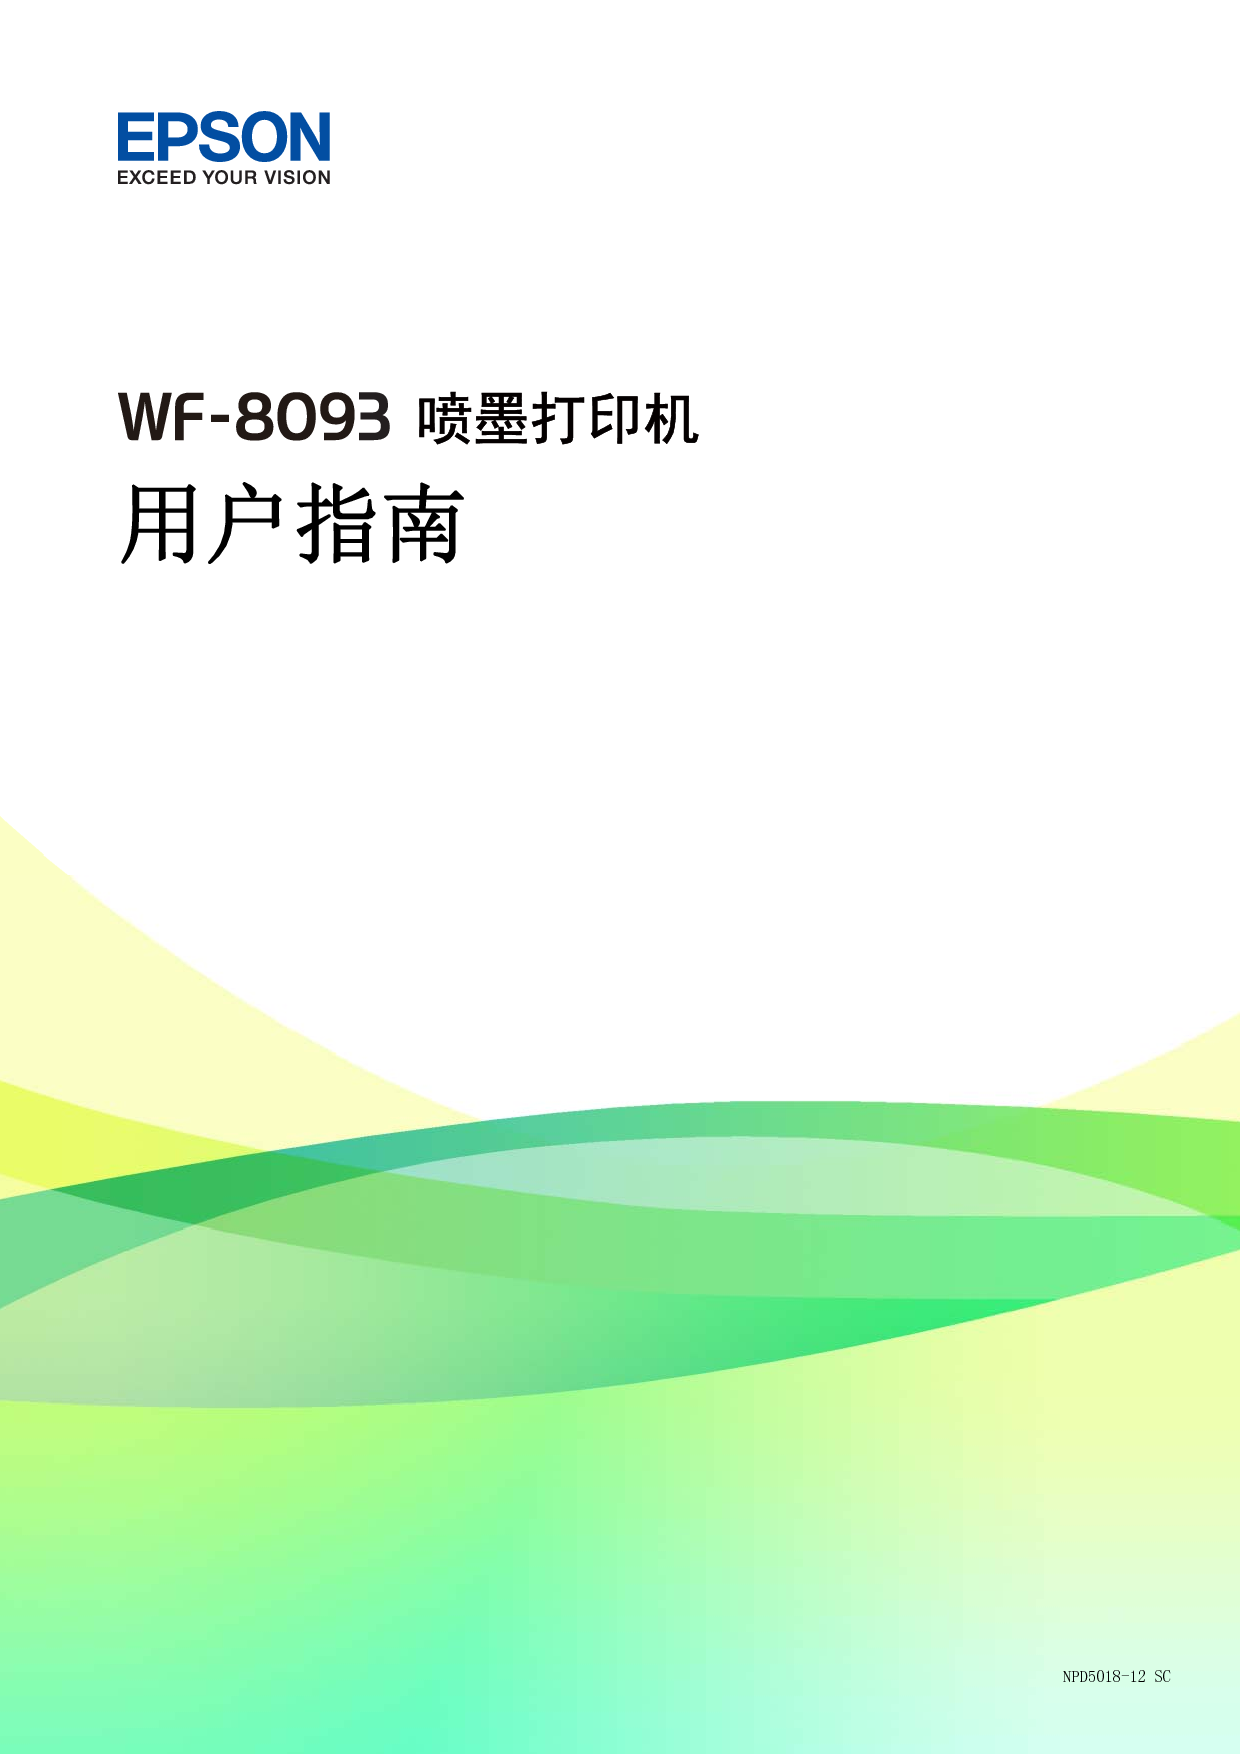 爱普生 Epson WF-8093 用户指南 封面